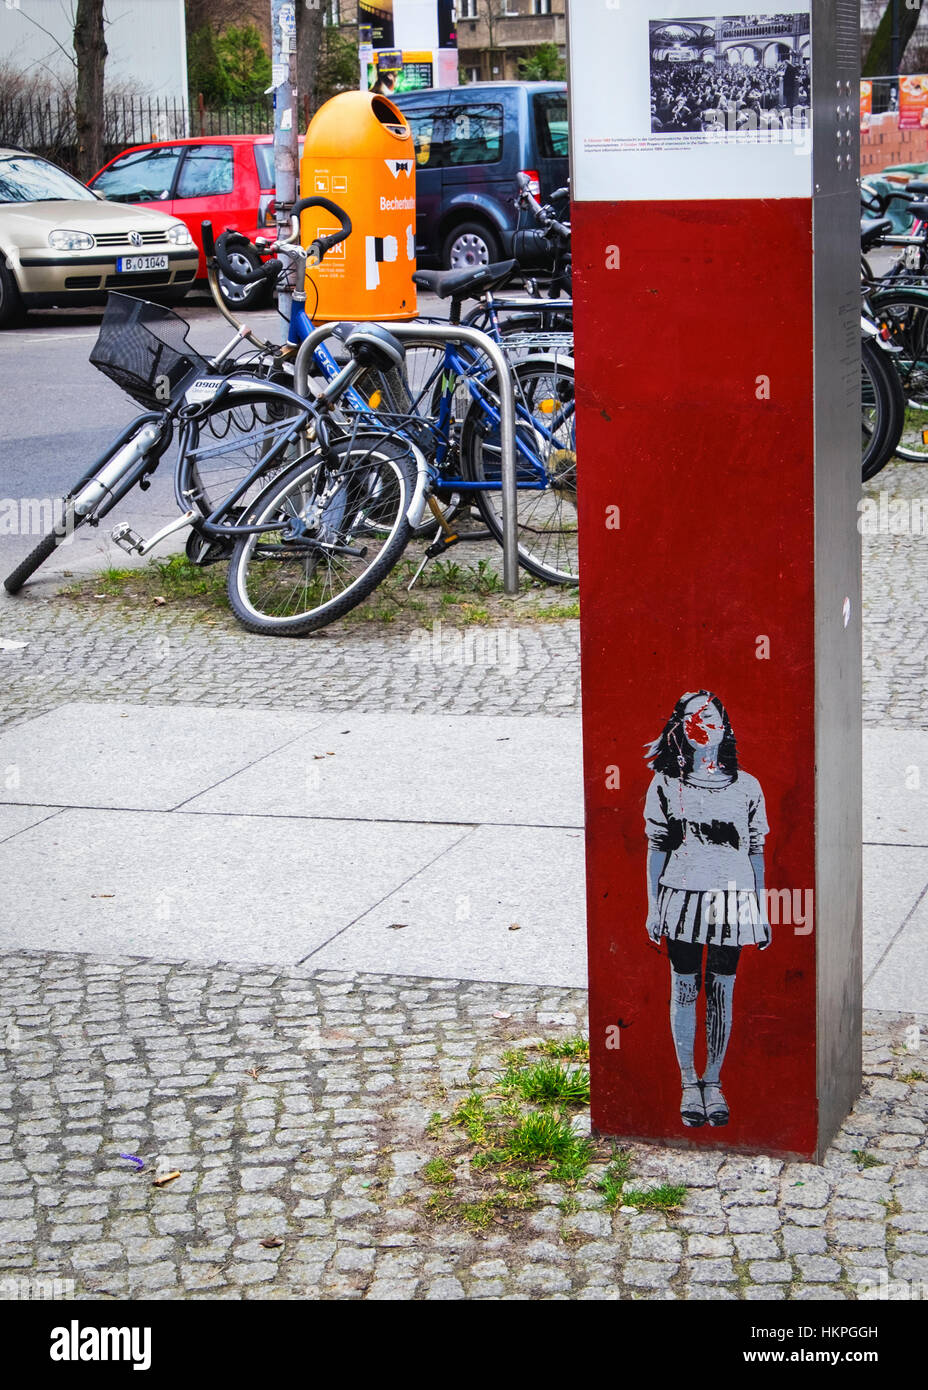 De Berlín, Prenzlauer Berg, Street View con información histórica Revolución Friedliche post & graffiti Foto de stock